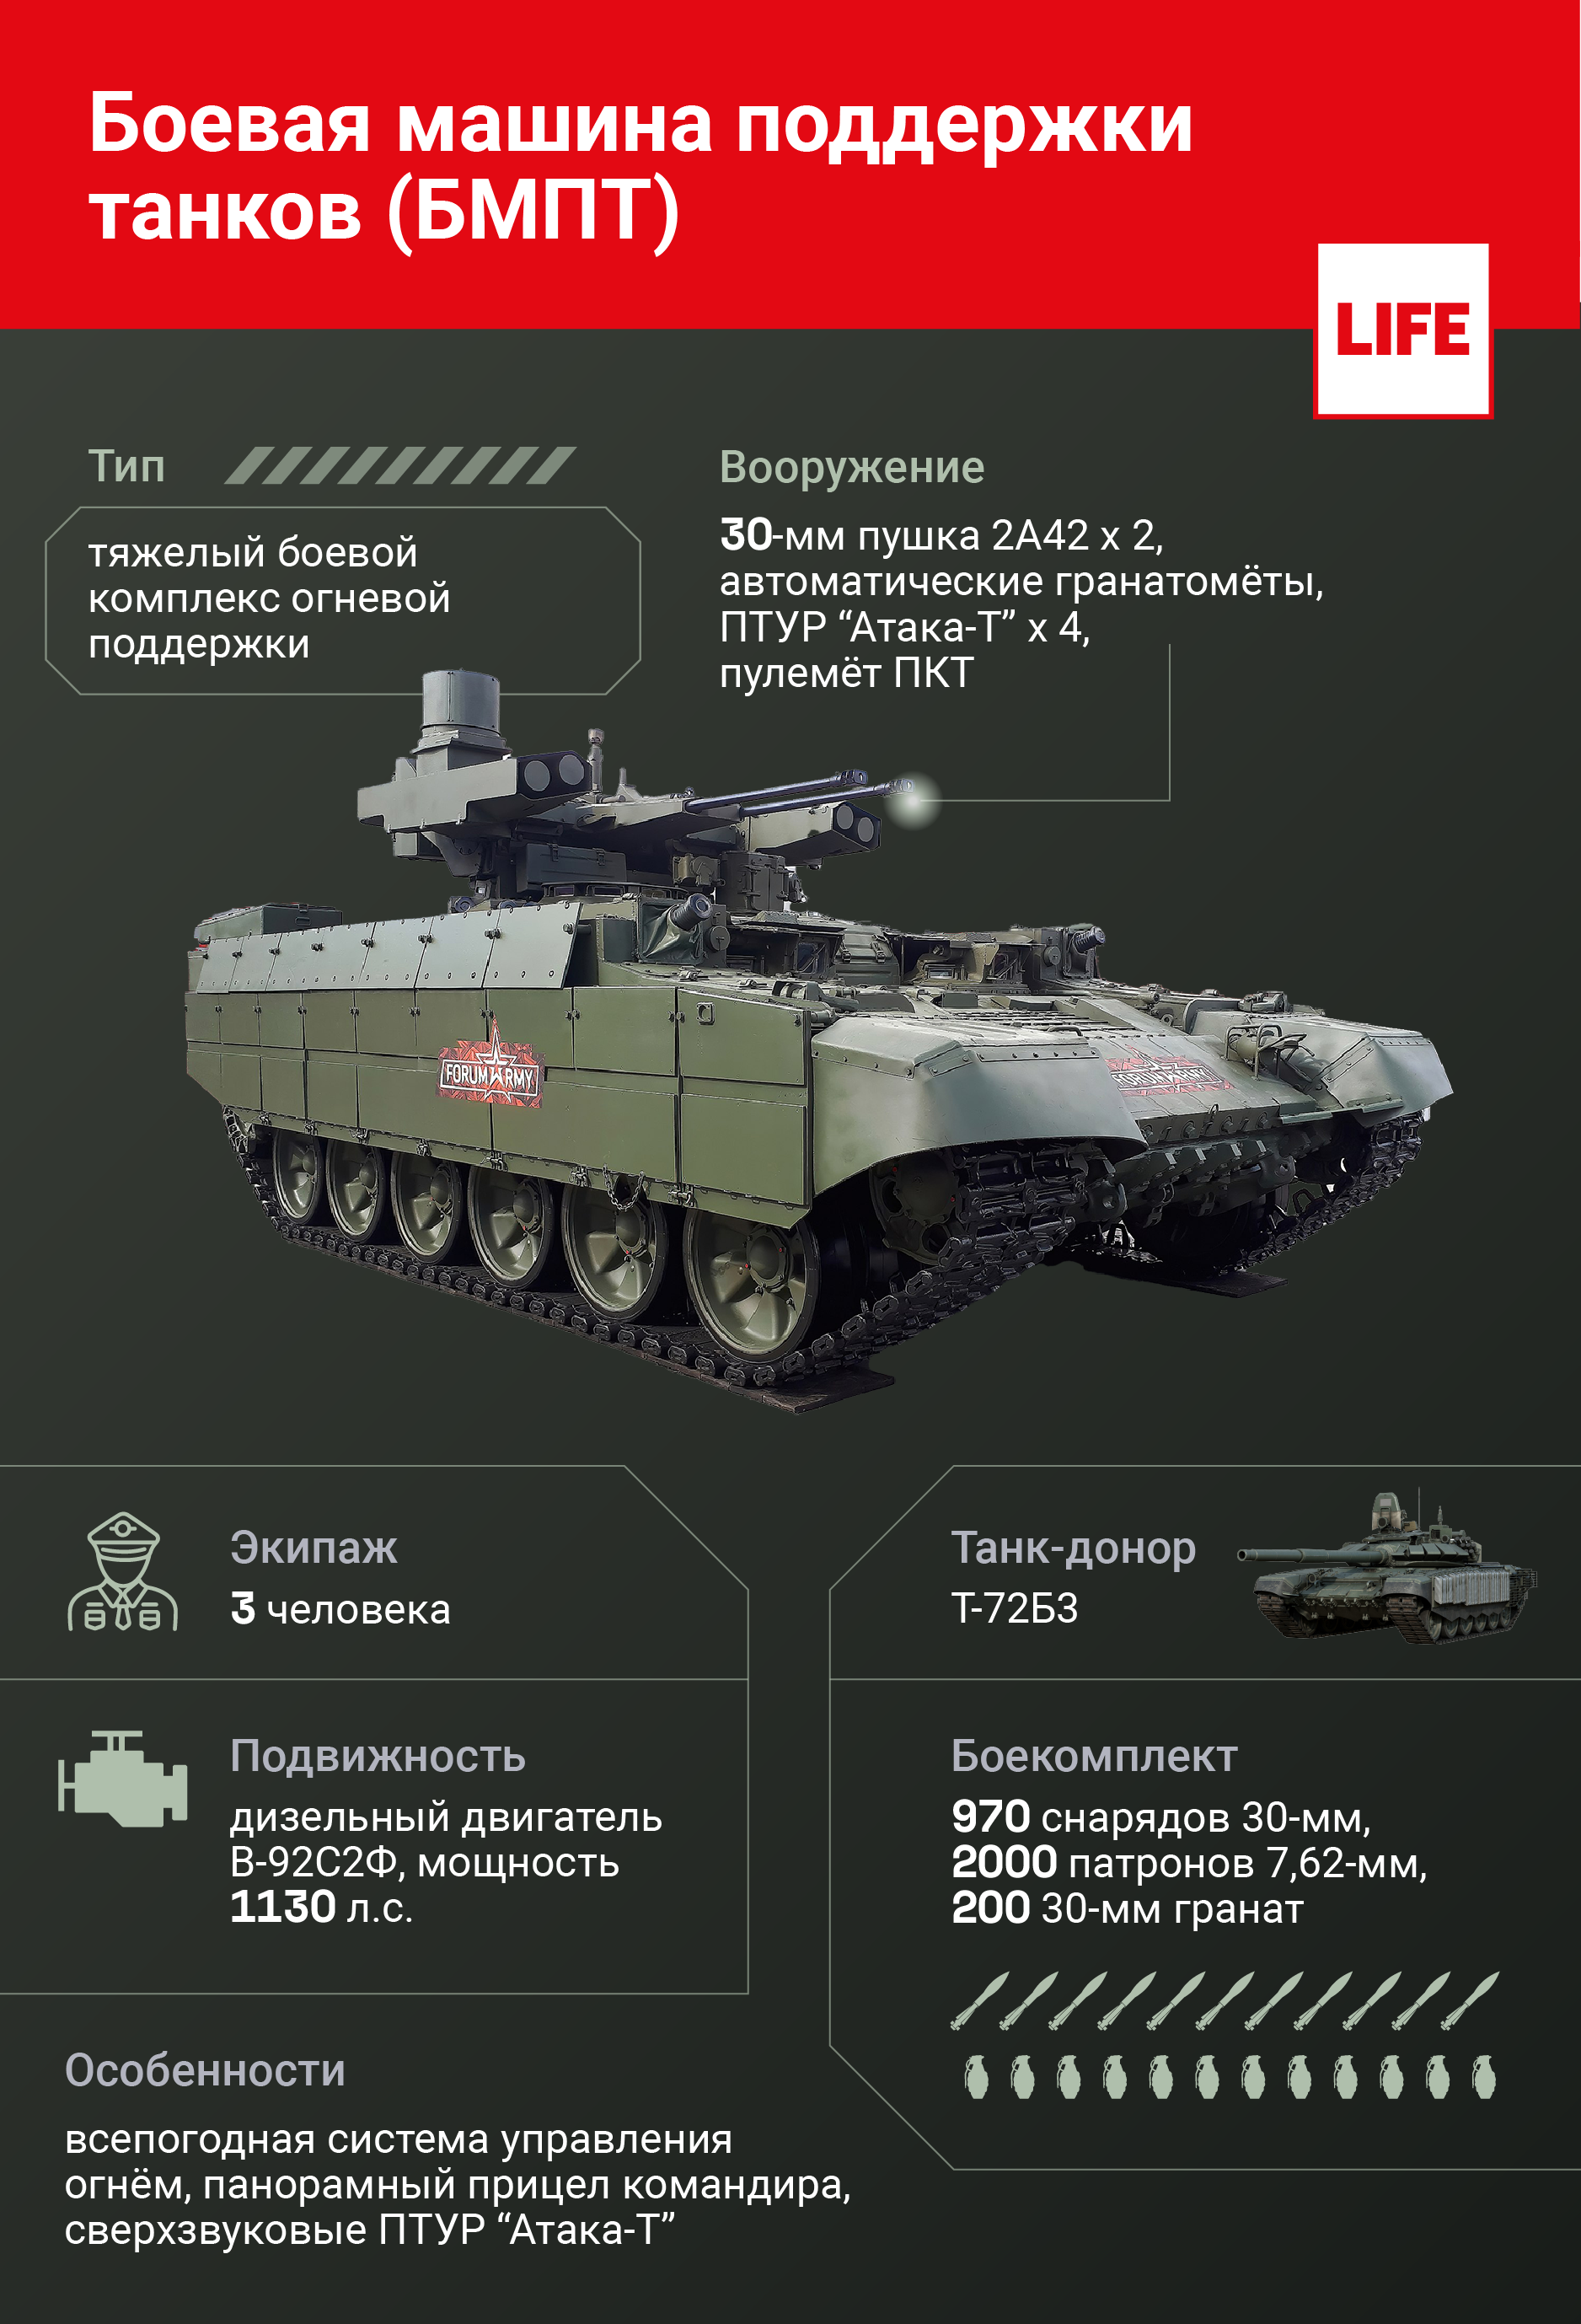 Боевая машина поддержки танков (БМПТ). Инфографика © LIFE